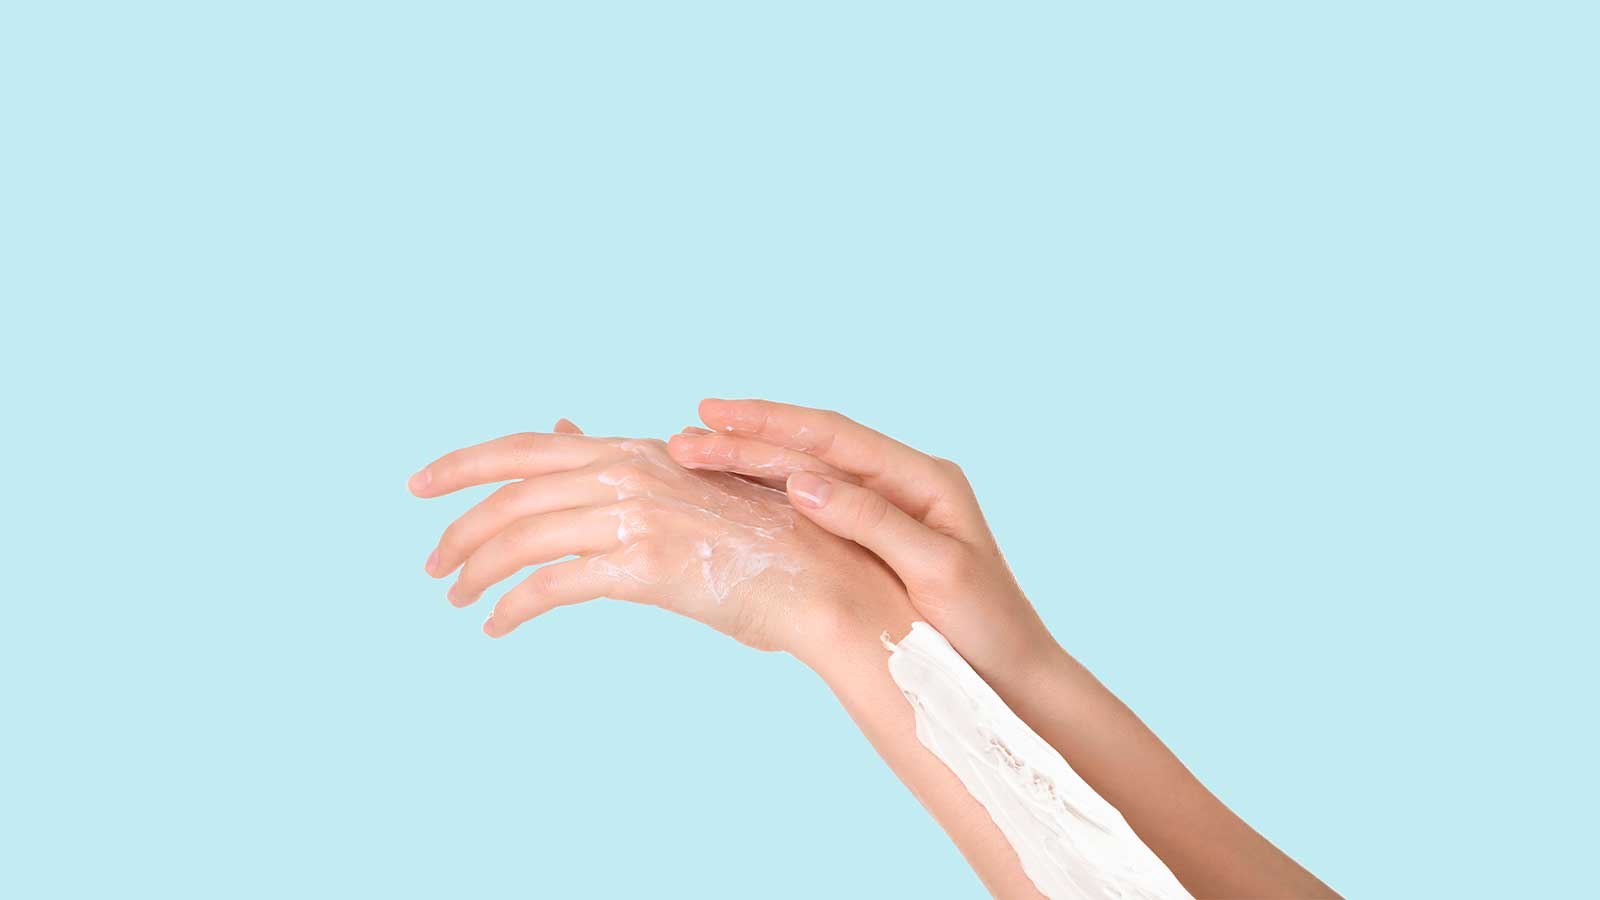 Applying shaving gel on the hand